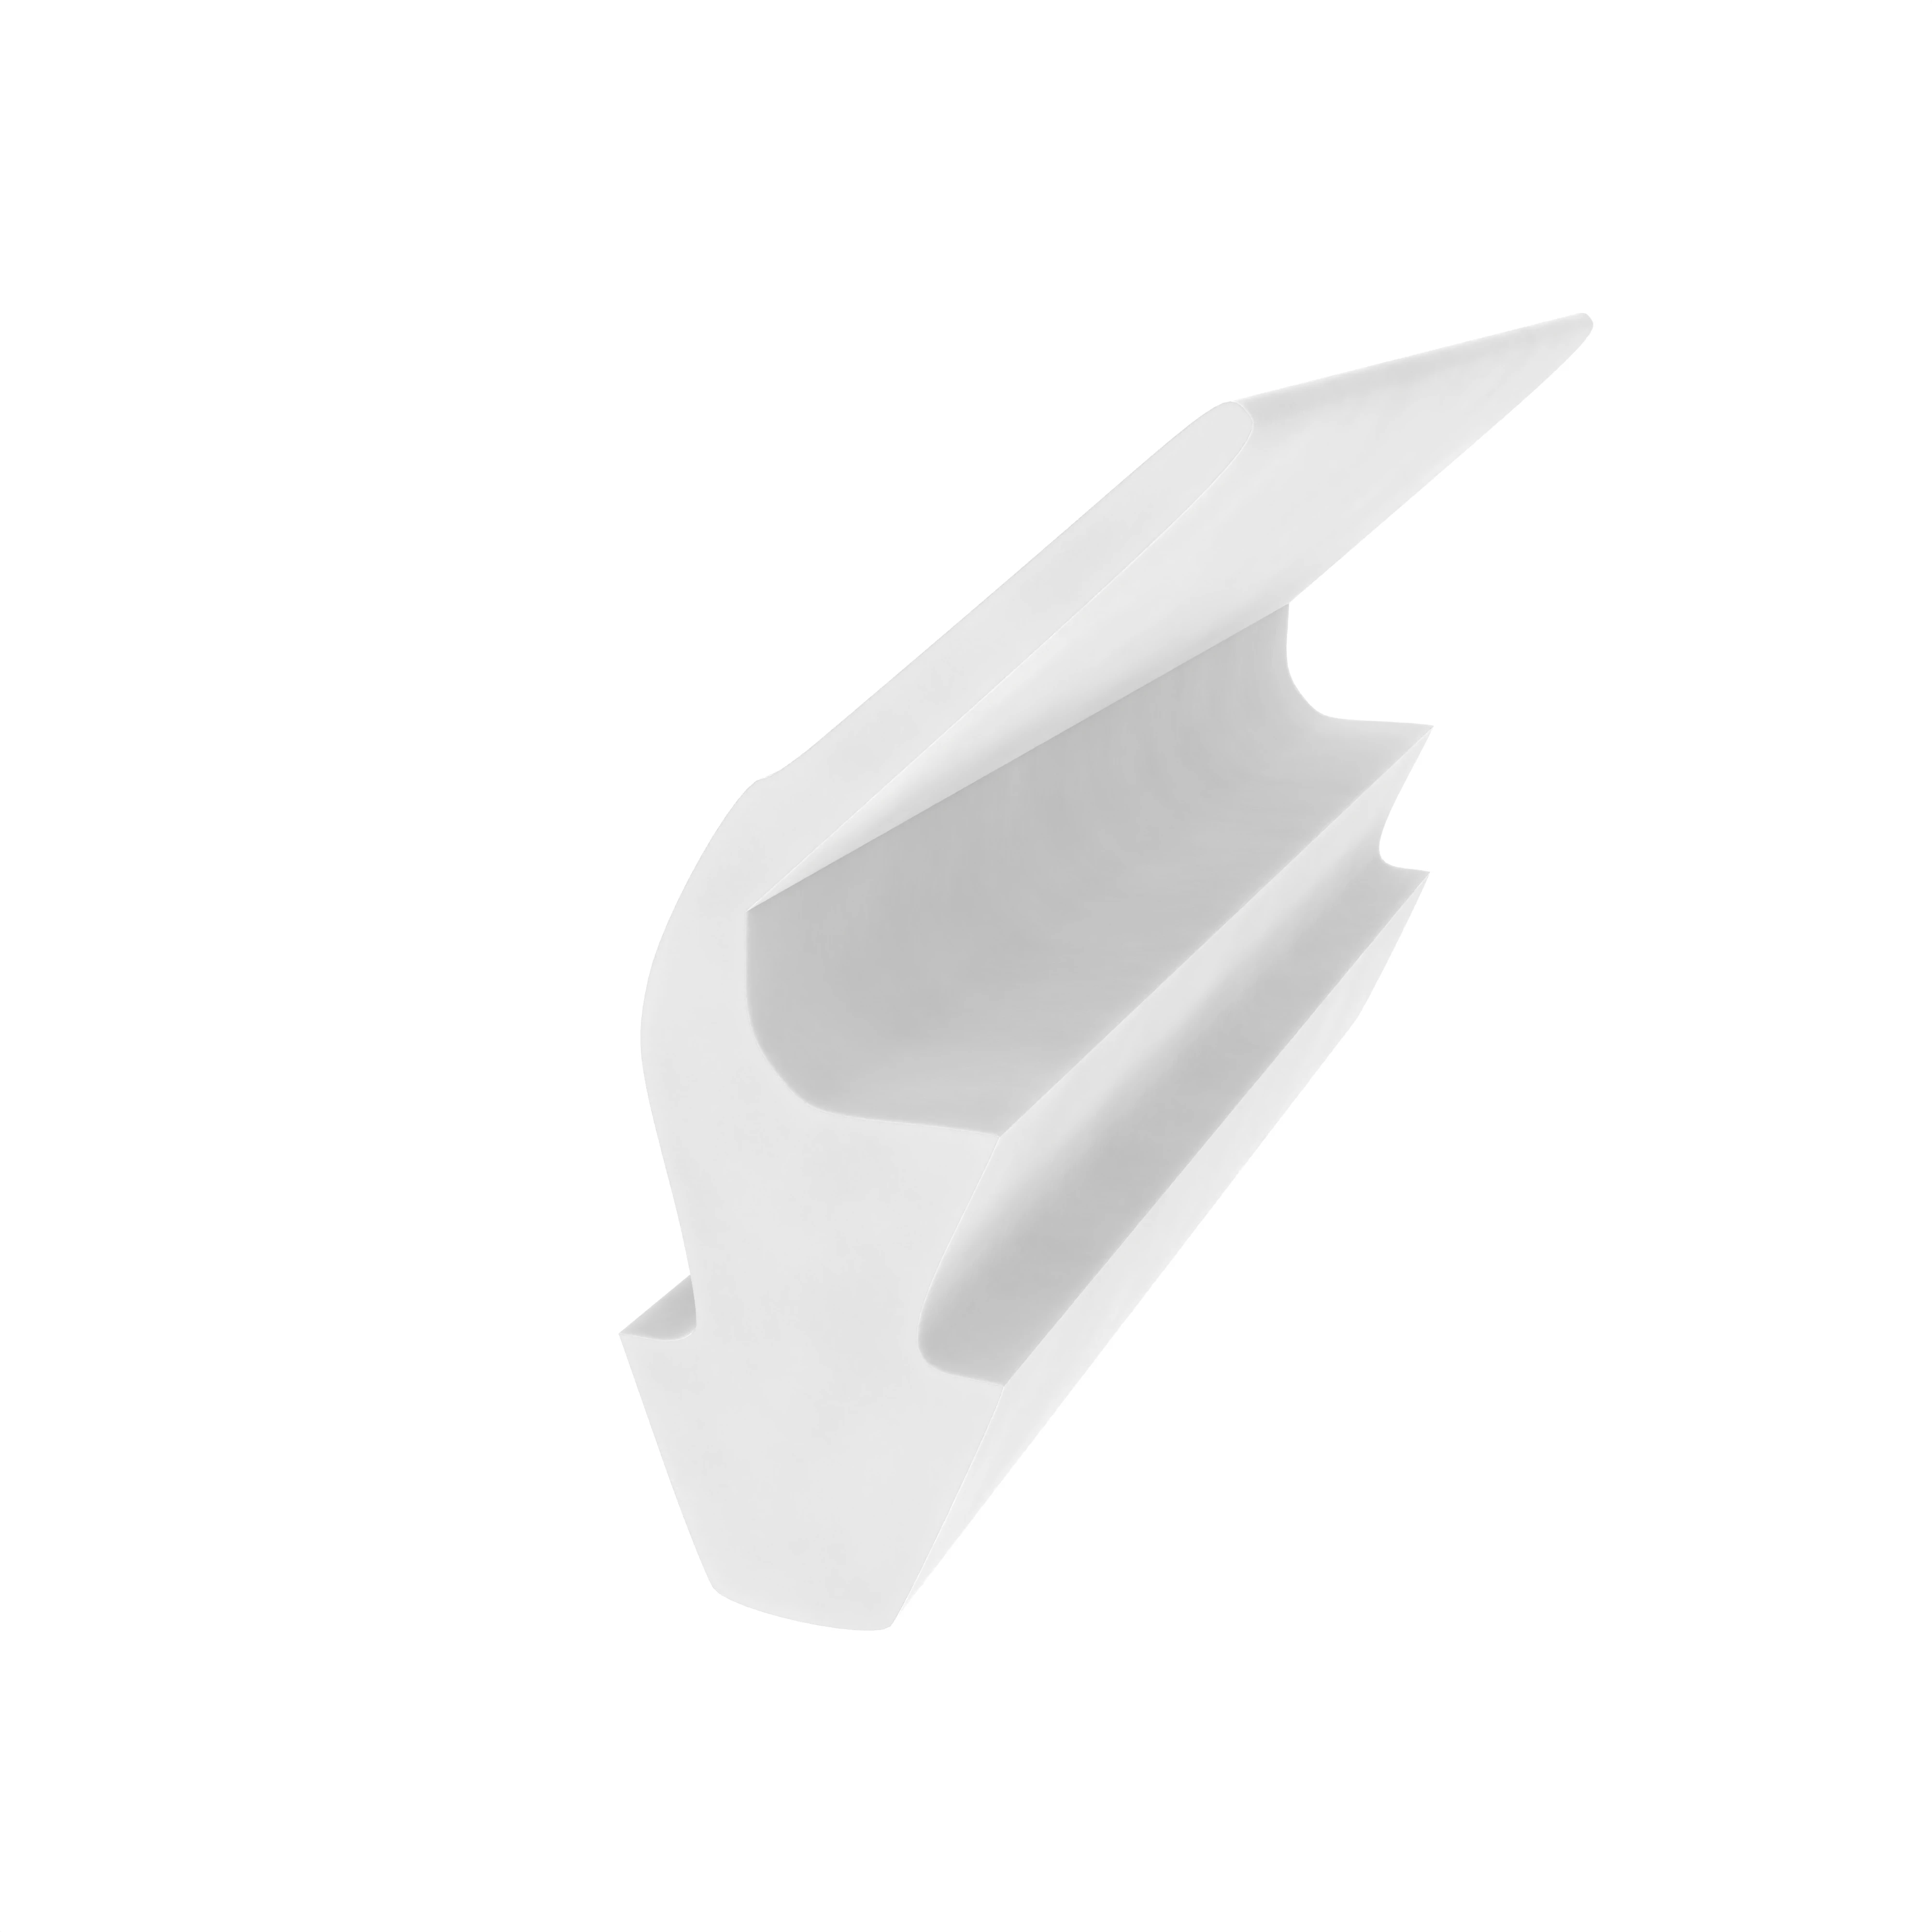 Anschlagdichtung mit Lippe und profiliertem Fuß | 9 mm Höhe | Farbe: weiß 